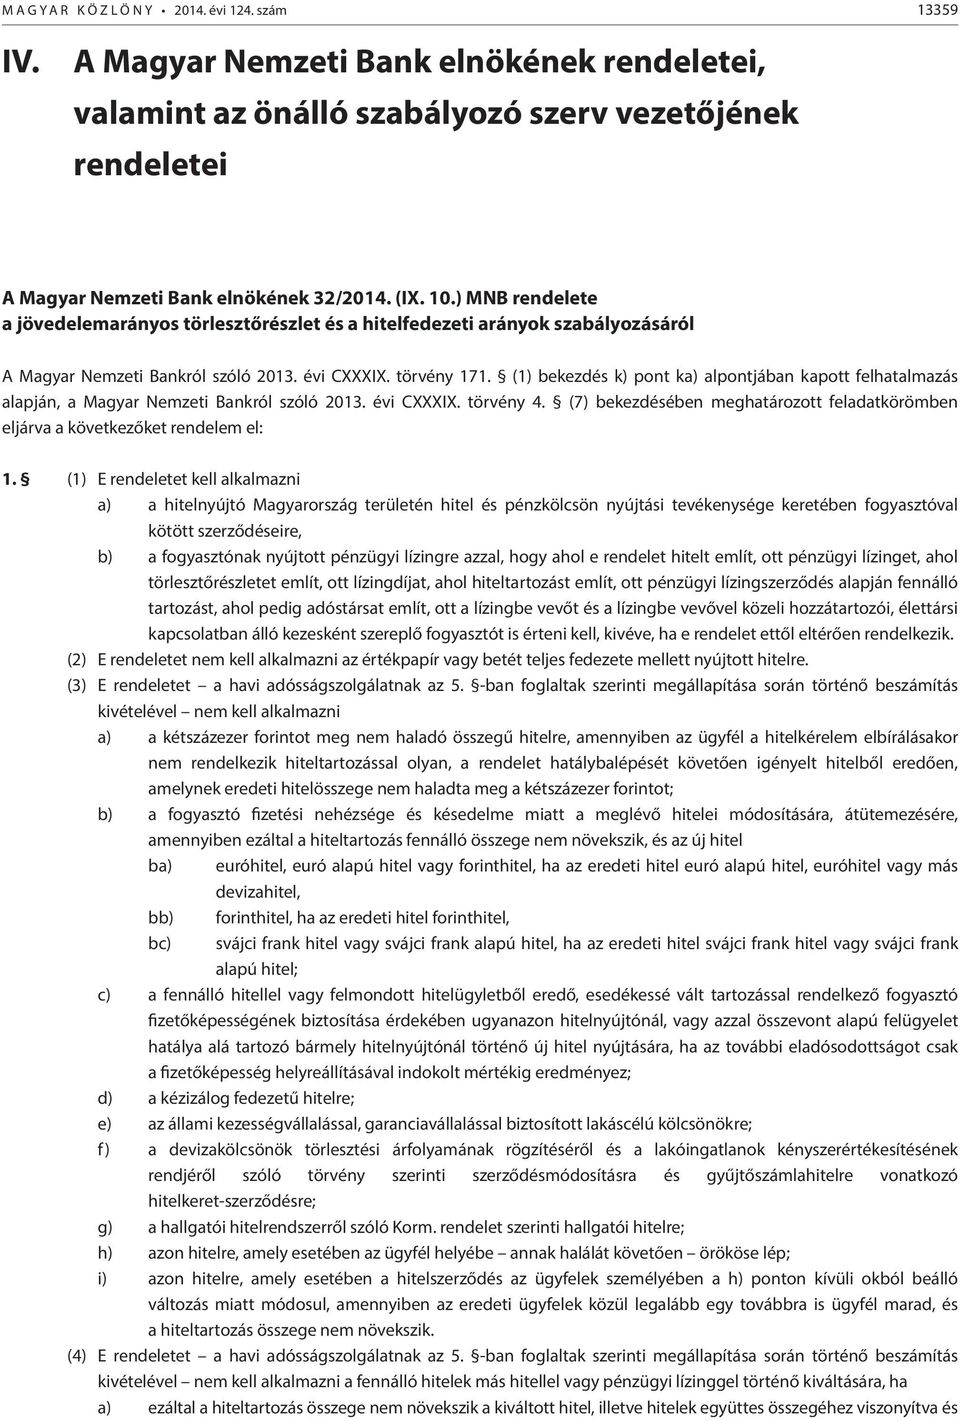 (1) bekezdés k) pont ka) alpontjában kapott felhatalmazás alapján, a Magyar Nemzeti Bankról szóló 2013. évi CI. törvény 4.